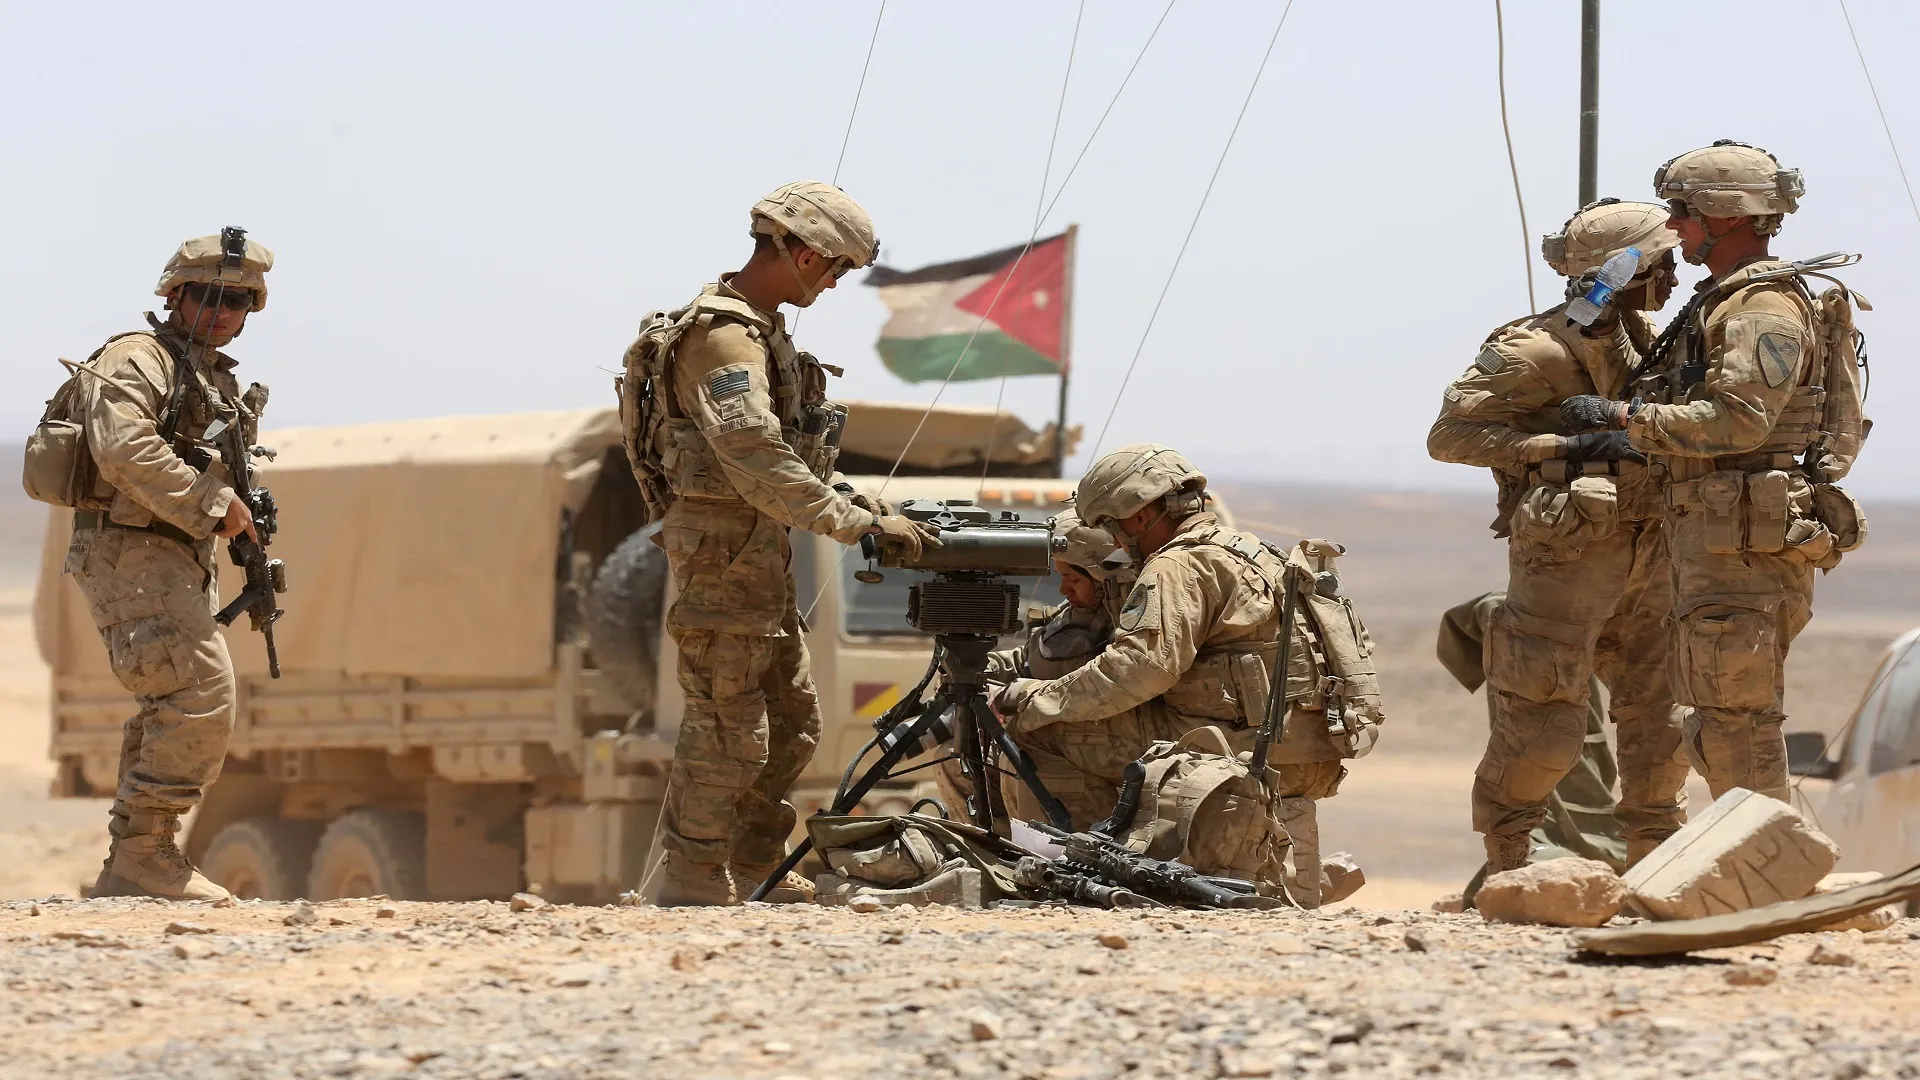 "الجيش الأردني" يُعلن إسقاط ثالث طائرة مسيرة قادمة من سوريا خلال شهر